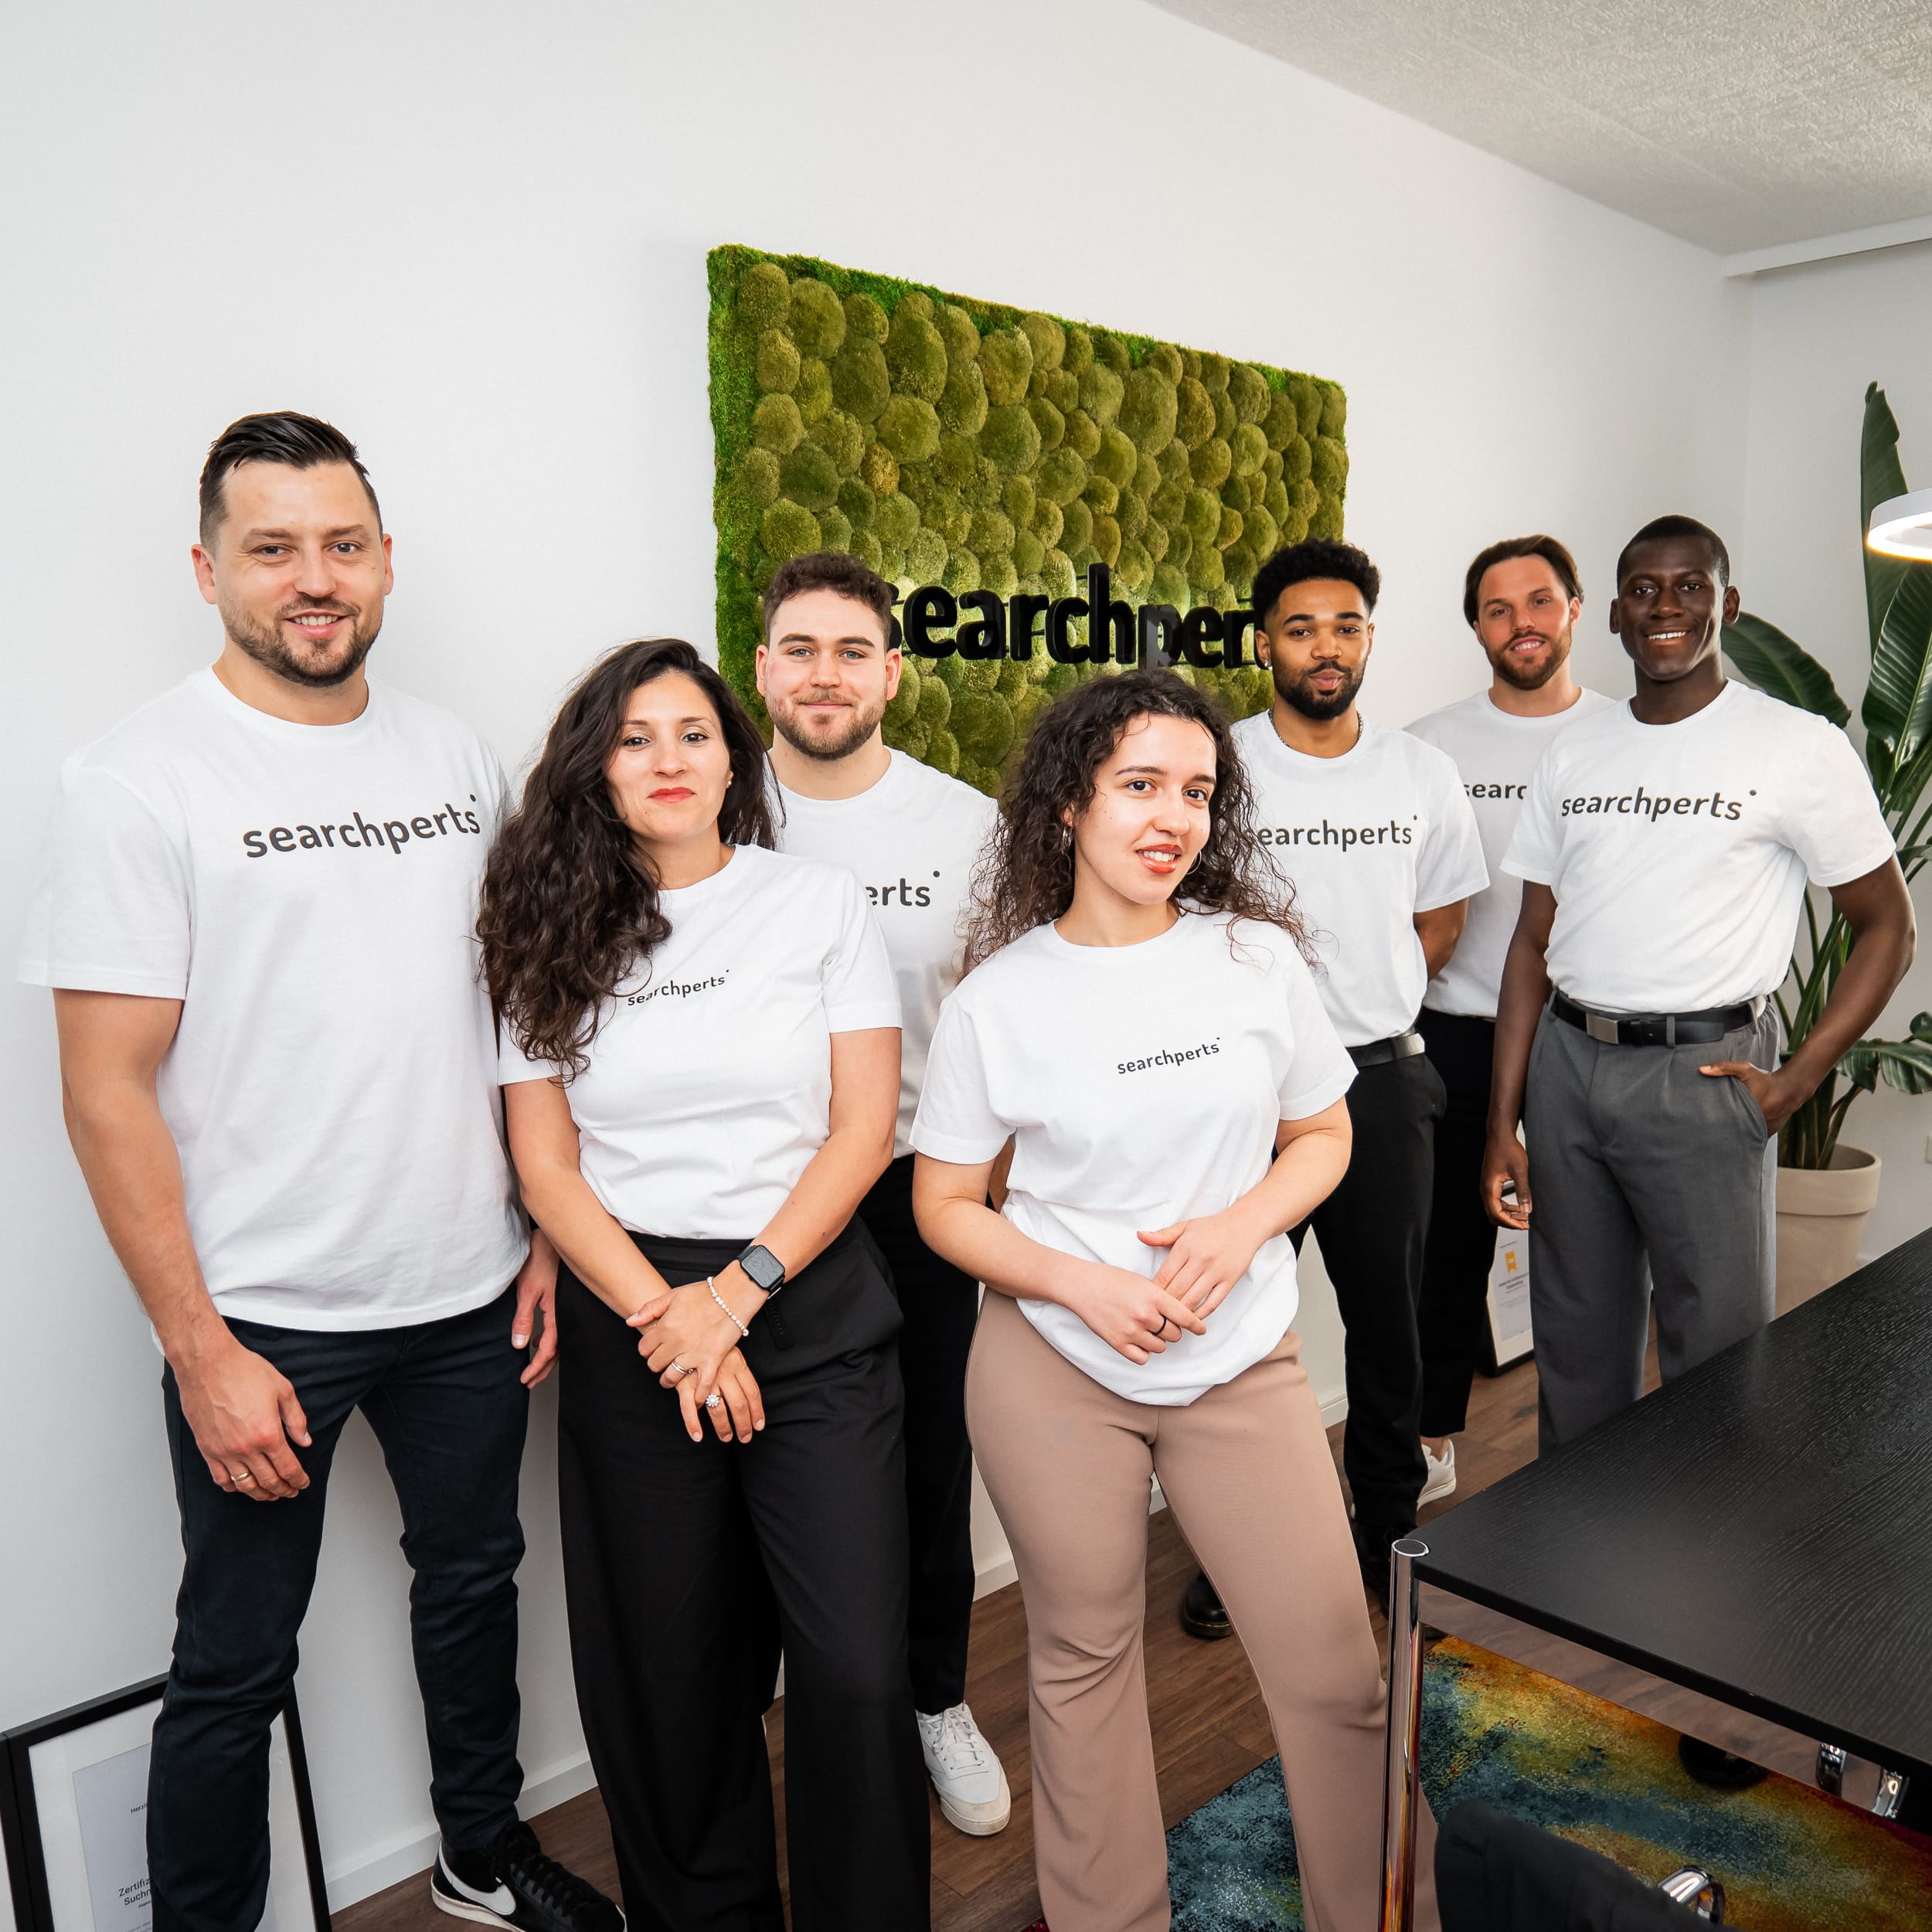 Das Team von Searchperts stehen zusammen im Düsseldorfer Büro. Alle tragen weiße T-Shirts mit dem Firmenlogo.